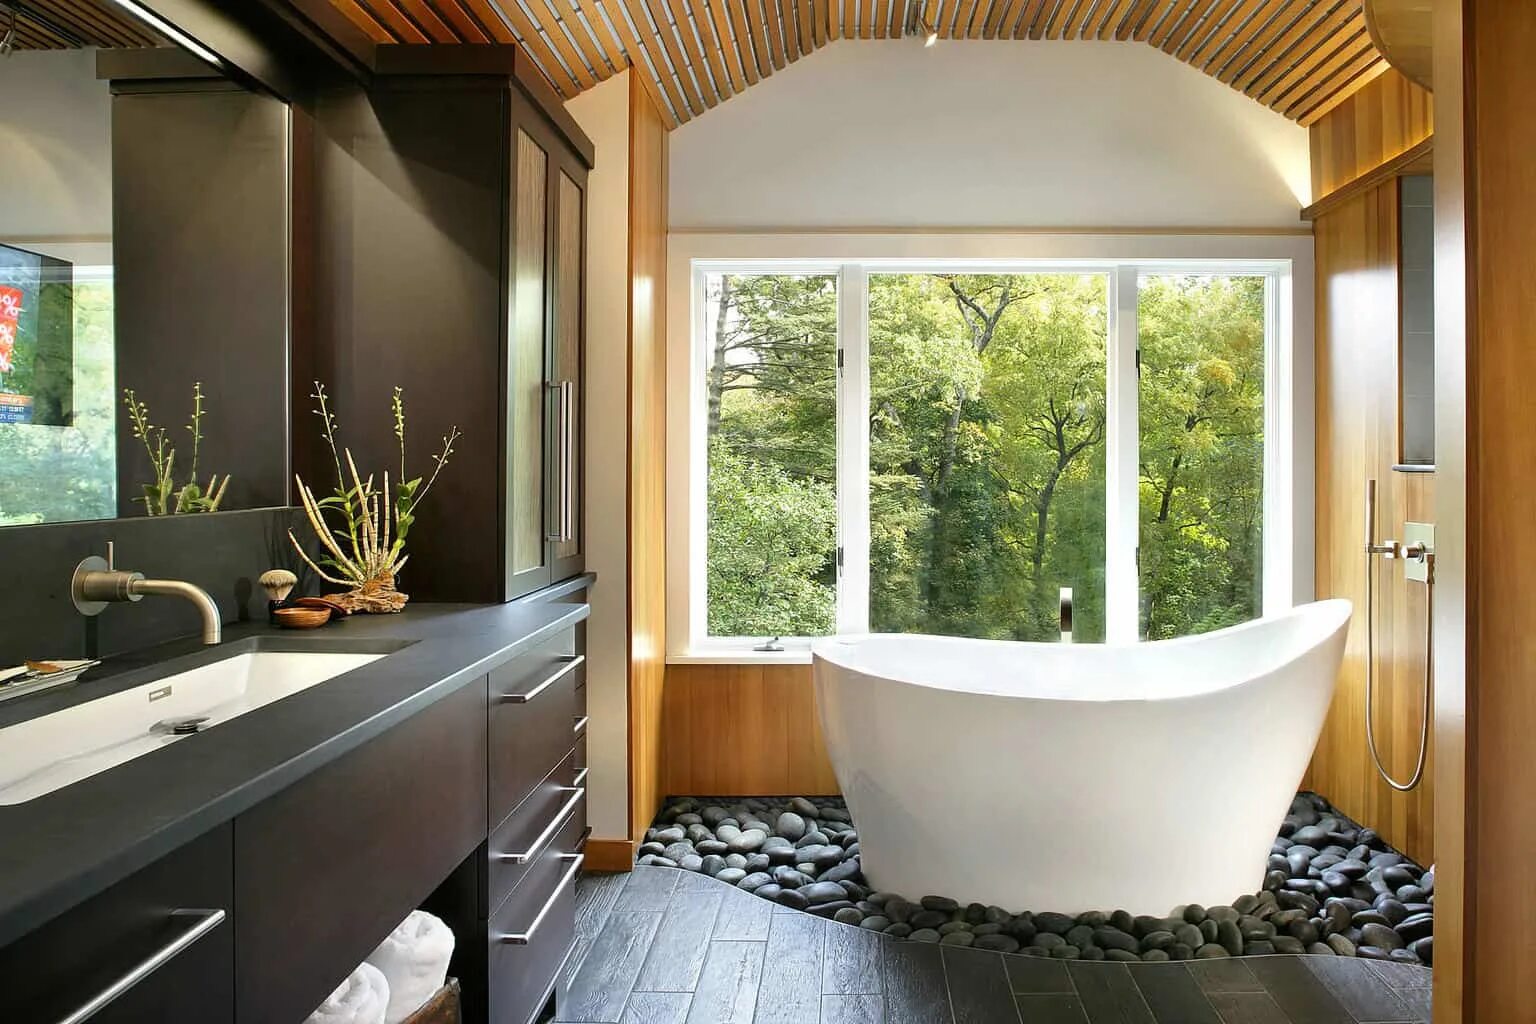 Yad vanna. Ванная комната с окном. Интерьер ванной с окном. Небольшая ванная с окном. Ванная с панорамным окном.